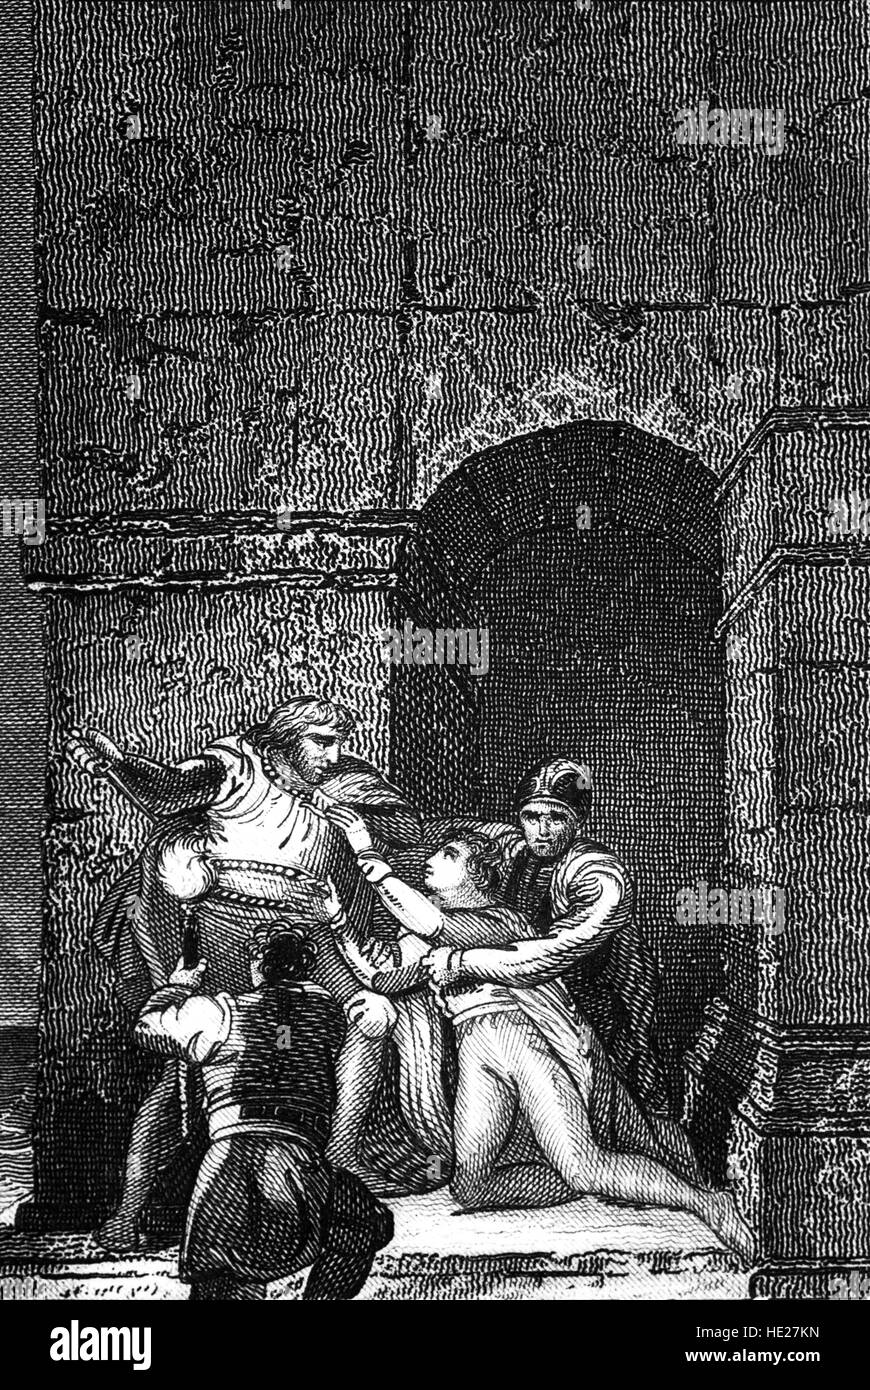 En 1190, le Prince Arthur (1187 - 1203) a été désigné héritier du trône d'Angleterre et son territoire français par son oncle, Richard I. L'intention étant qu'Arthur allait réussir Richard de préférence à Richard's jeune frère Jean. Cependant, Arthur a été capturé par le roi Jean et emprisonnés dans le château de Rouen, où il a été assassiné et jeté dans la Seine. Banque D'Images